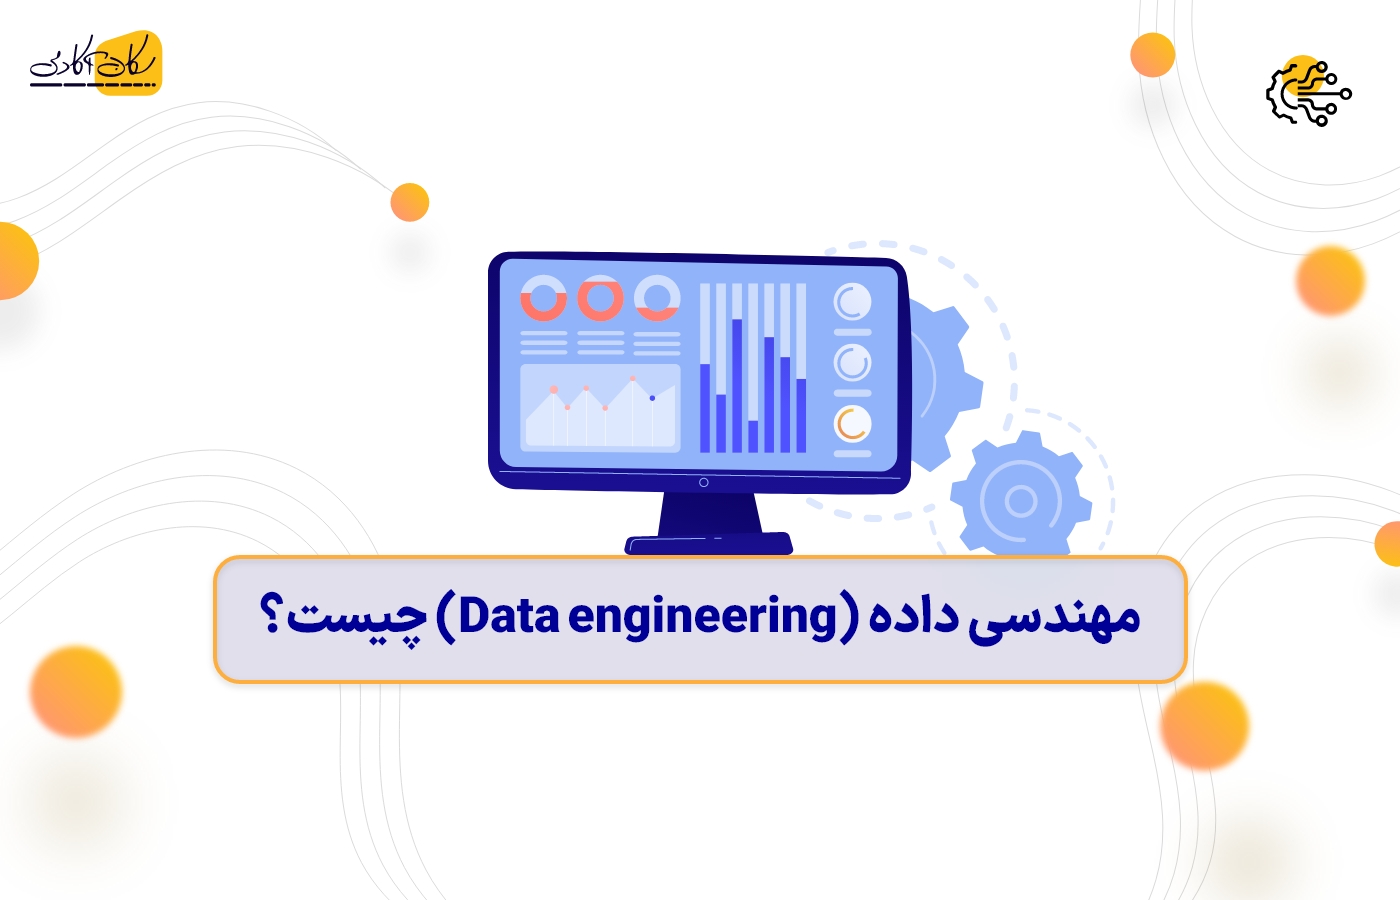 مهندسی داده (Data engineering) چیست؟